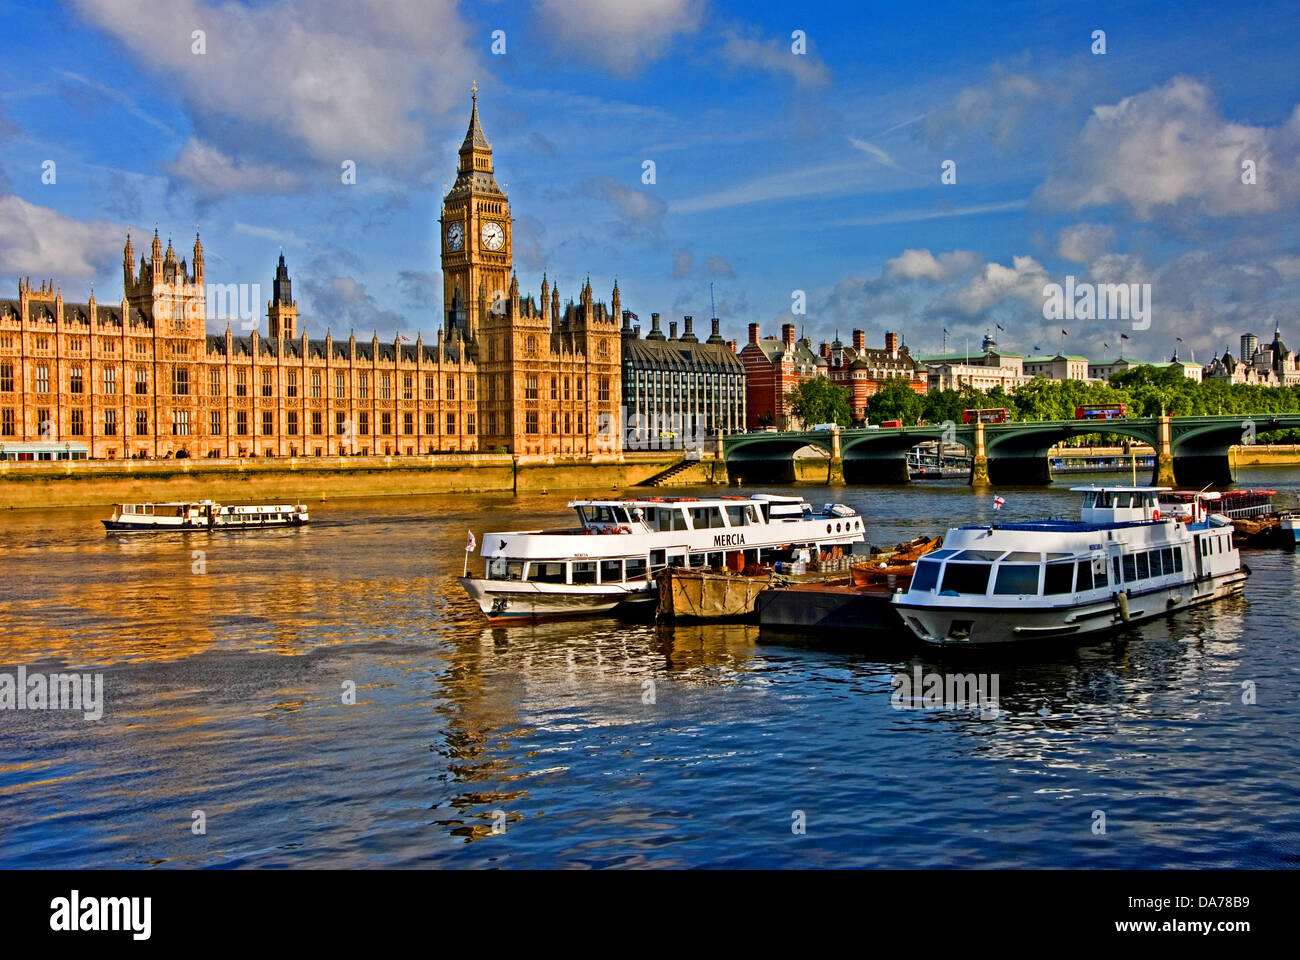 Le palais de Westminster et Big Ben surplombent la Tamise dans le centre de Londres Banque D'Images